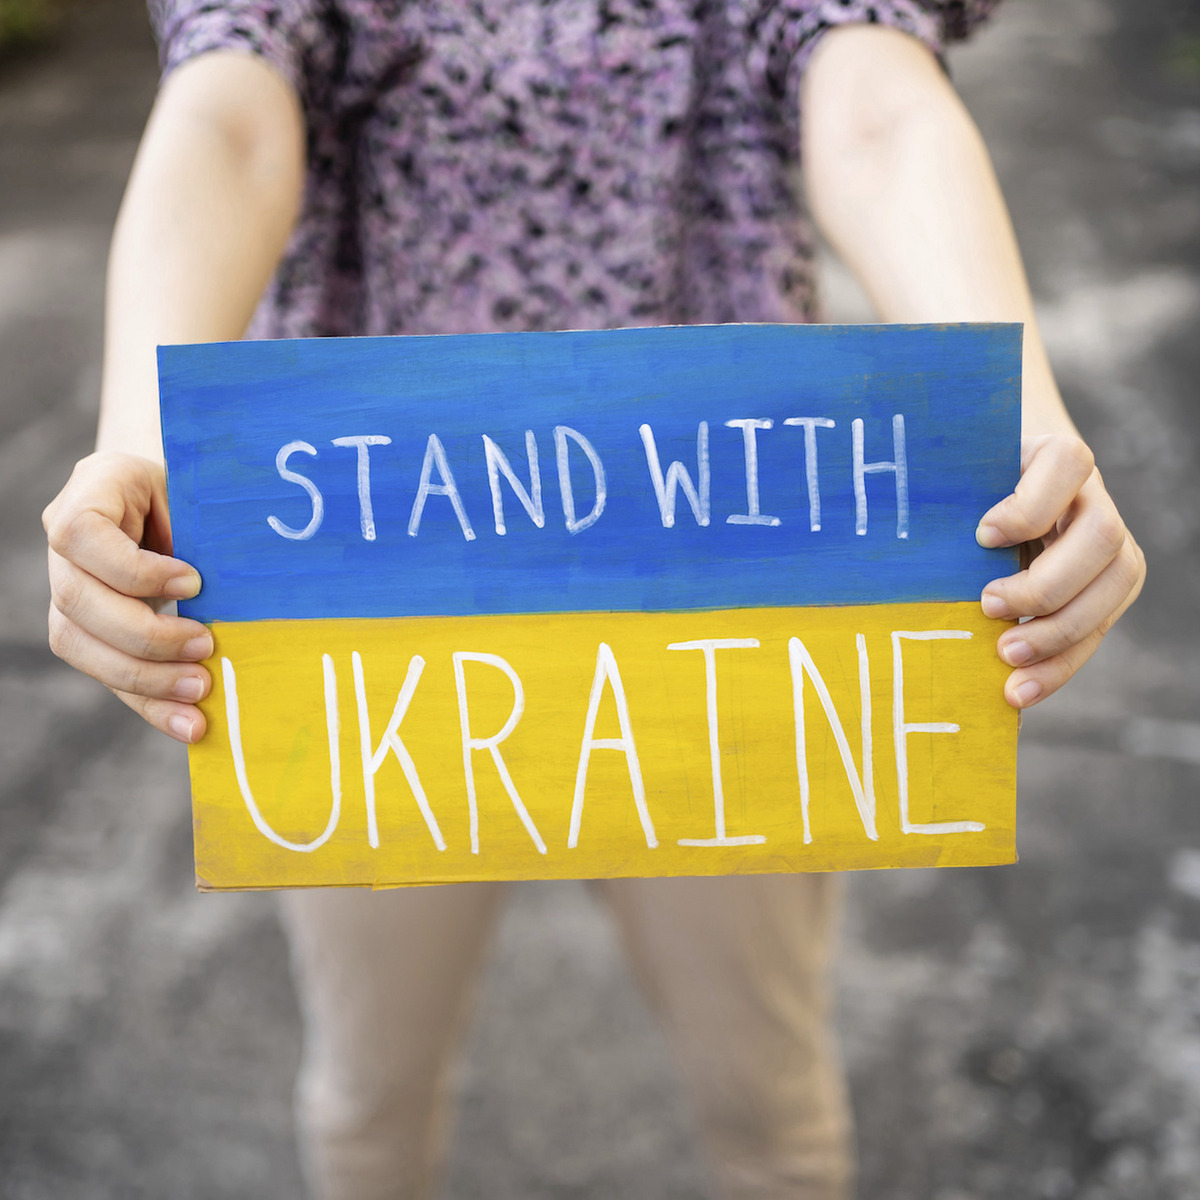 Eine Person hält ein Schild auf dem "Stand With Ukraine" steht